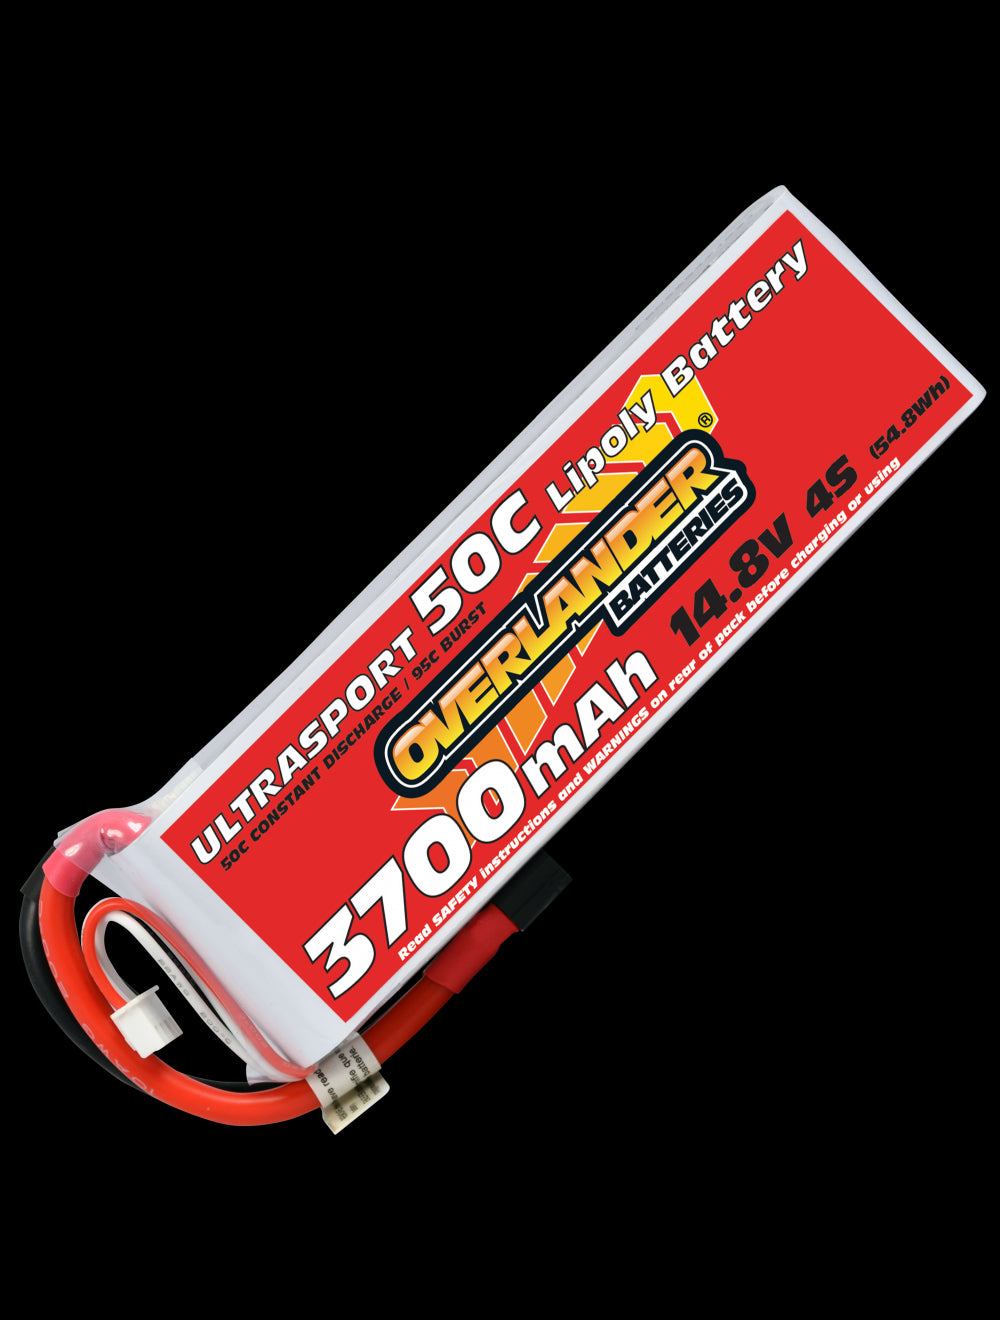 Overlander 3700mAh 14.8V 4S 50C Ultrasport LiPo Battery - XT60 Connector 2629